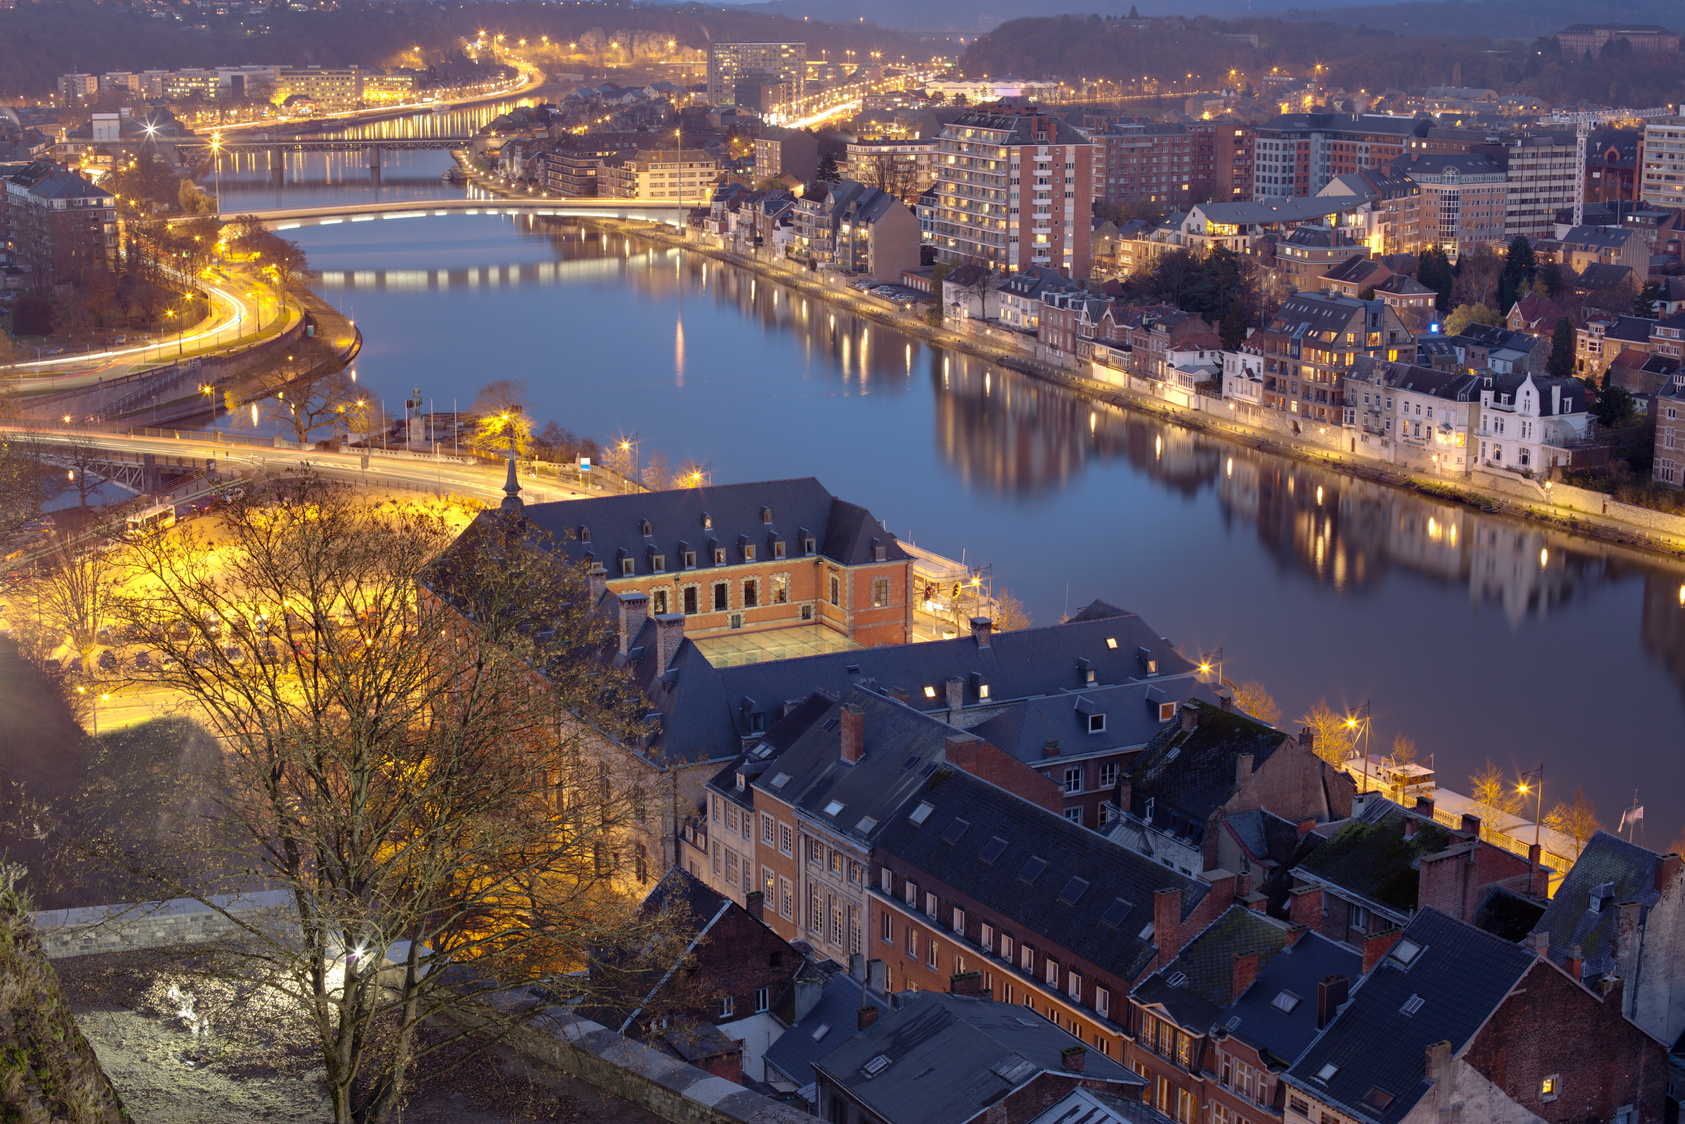 Namur at night